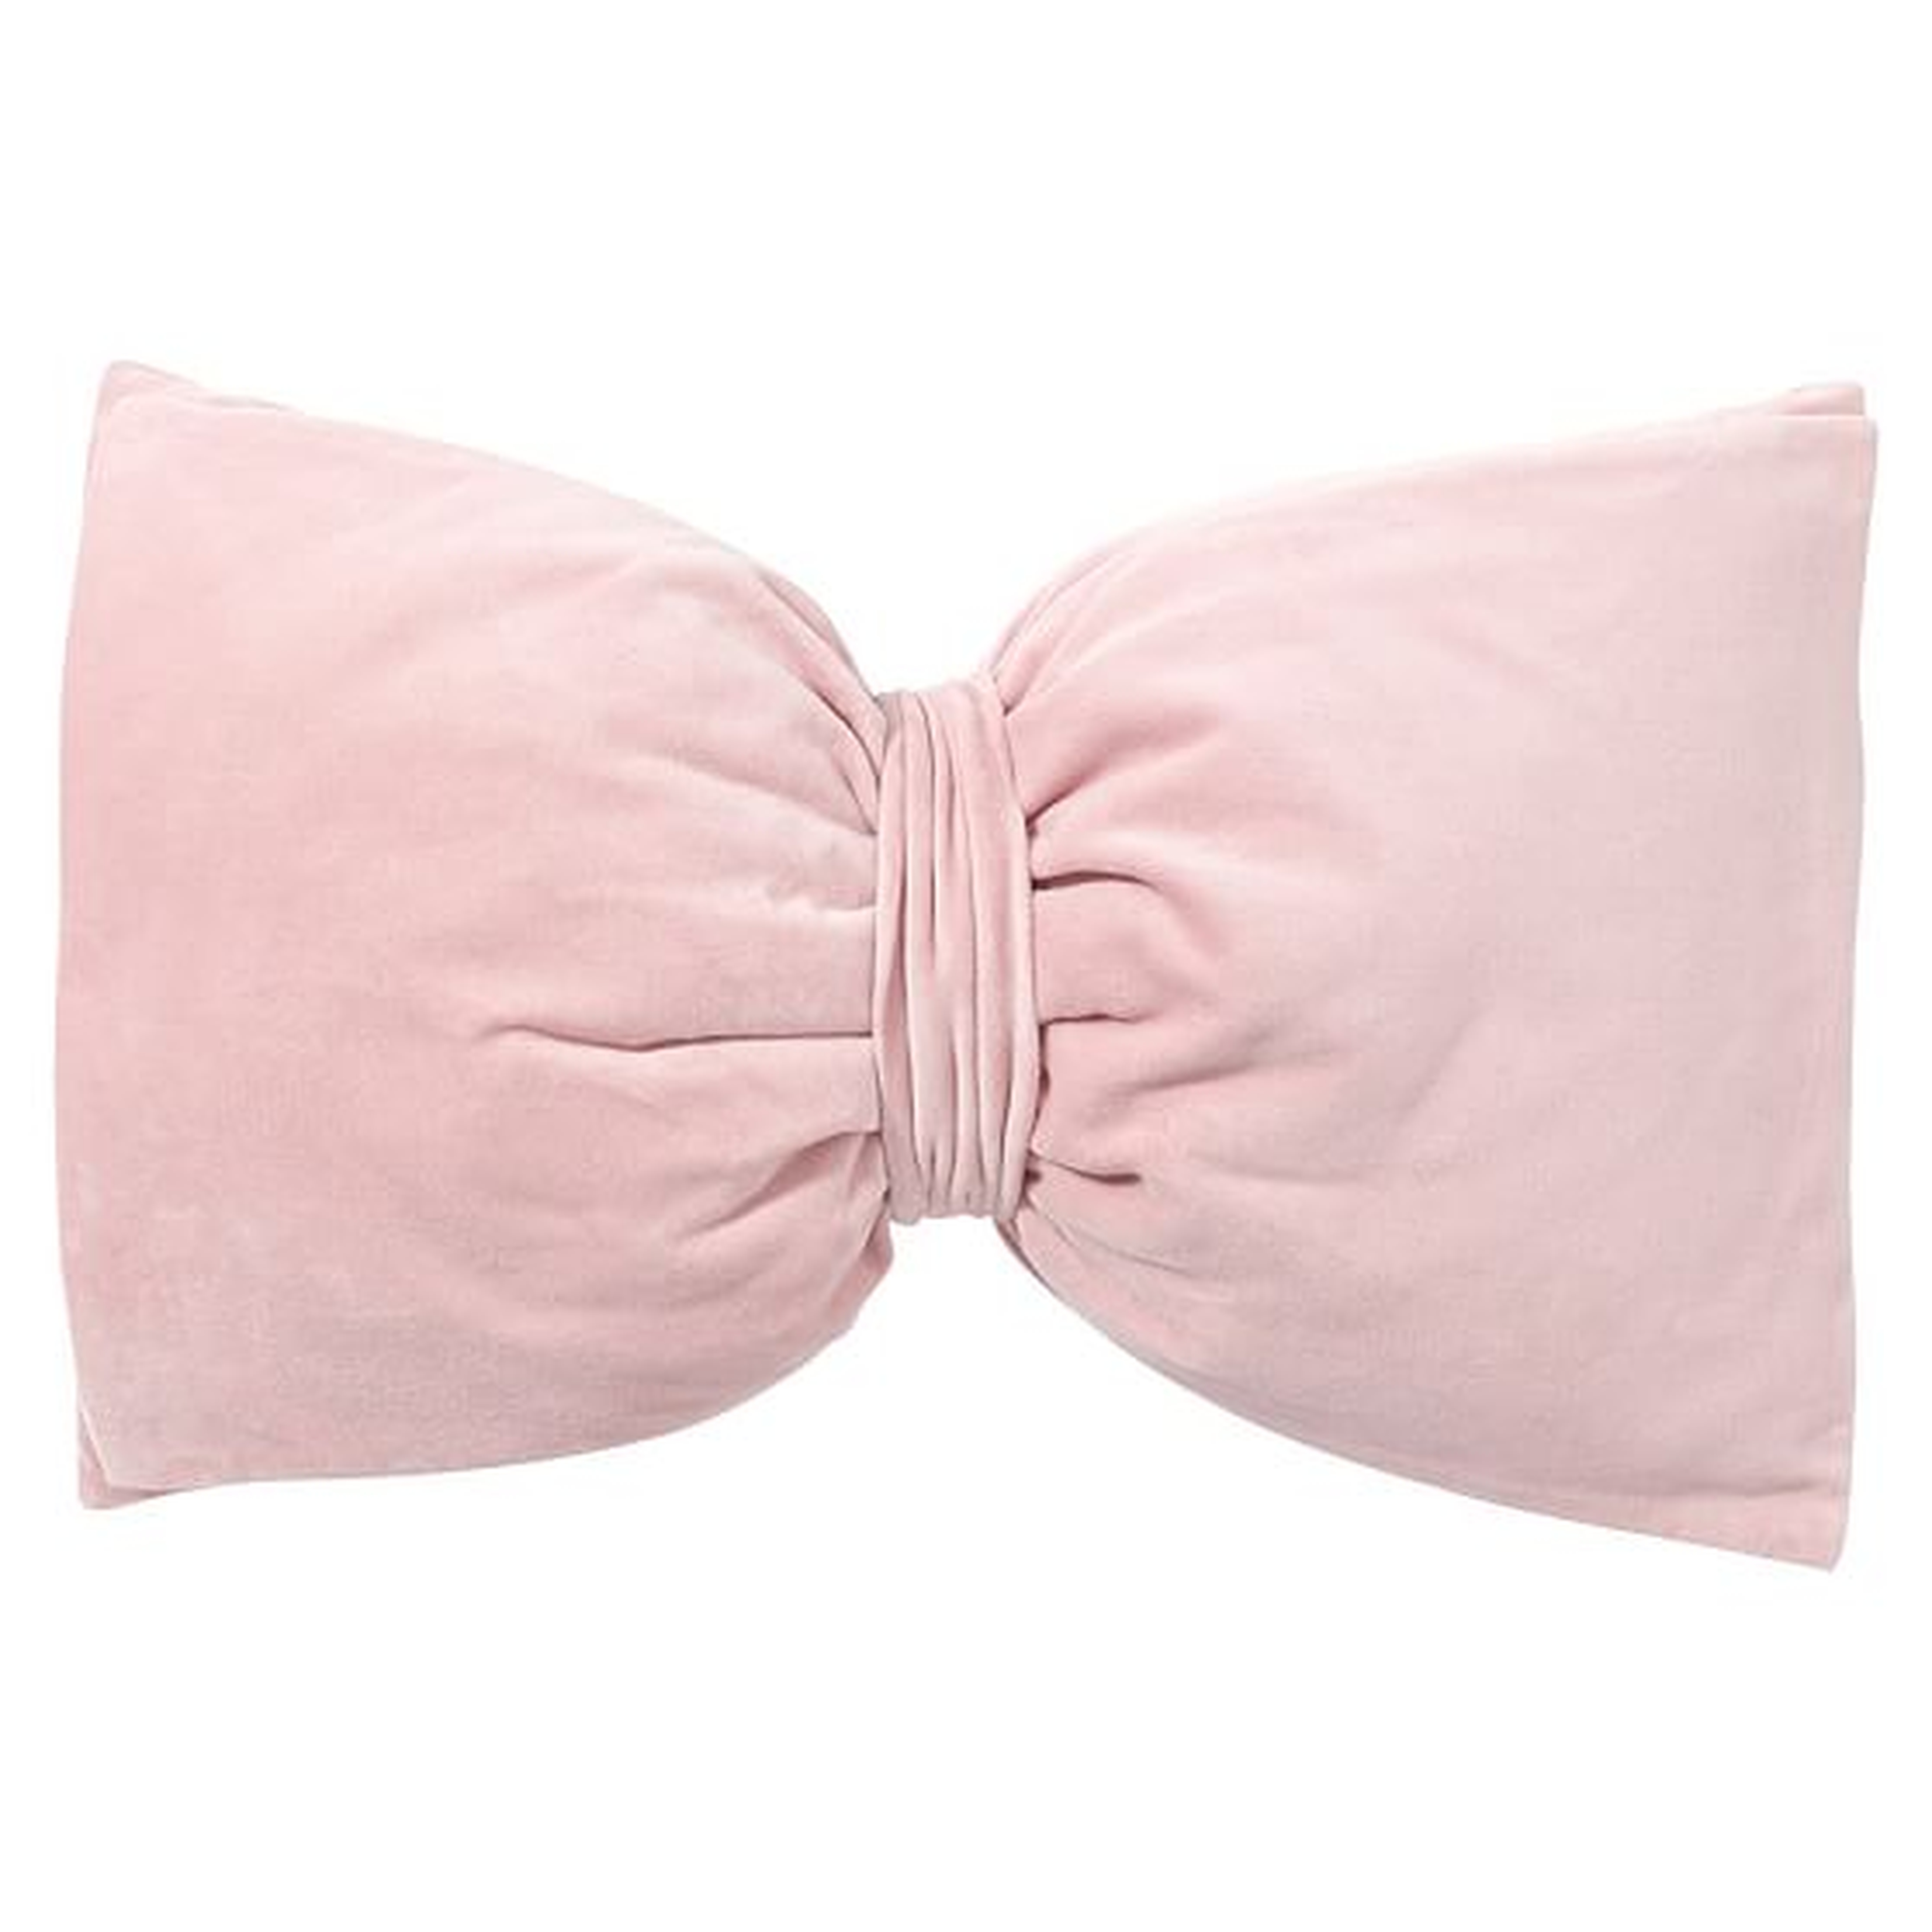 The Emily & Meritt Velvet Bow Pillows - Quartz Pink - 18" x 10.5" - Polyester fill - Pottery Barn Teen